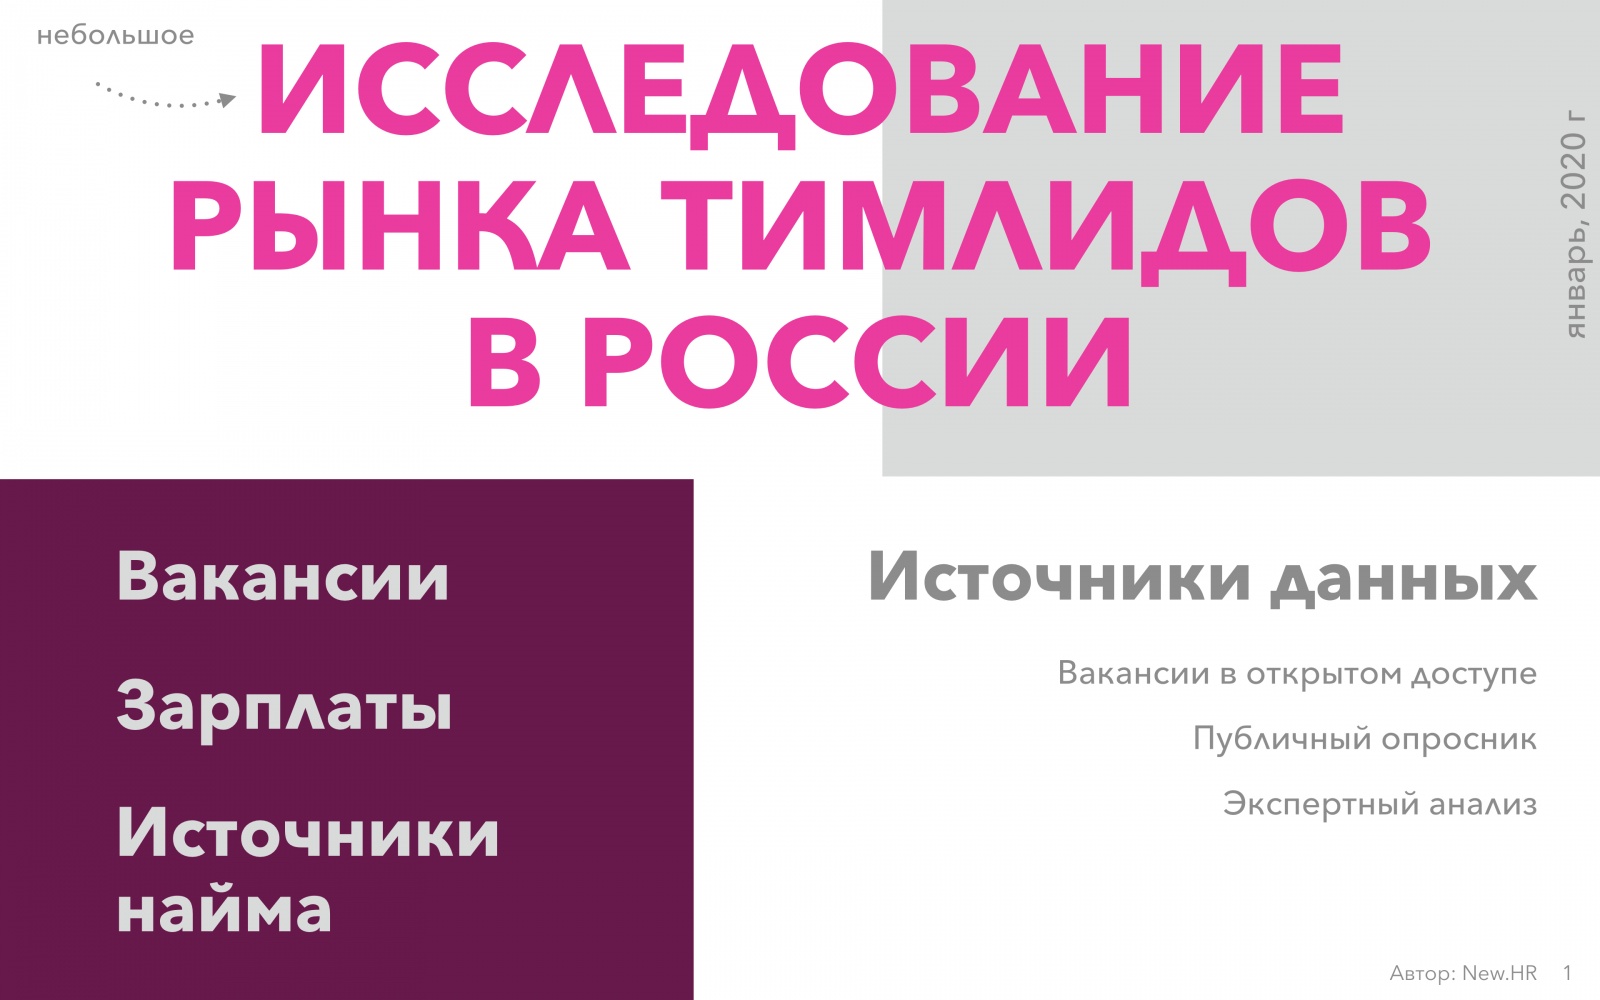 Исследование рынка тимлидов в России - 1